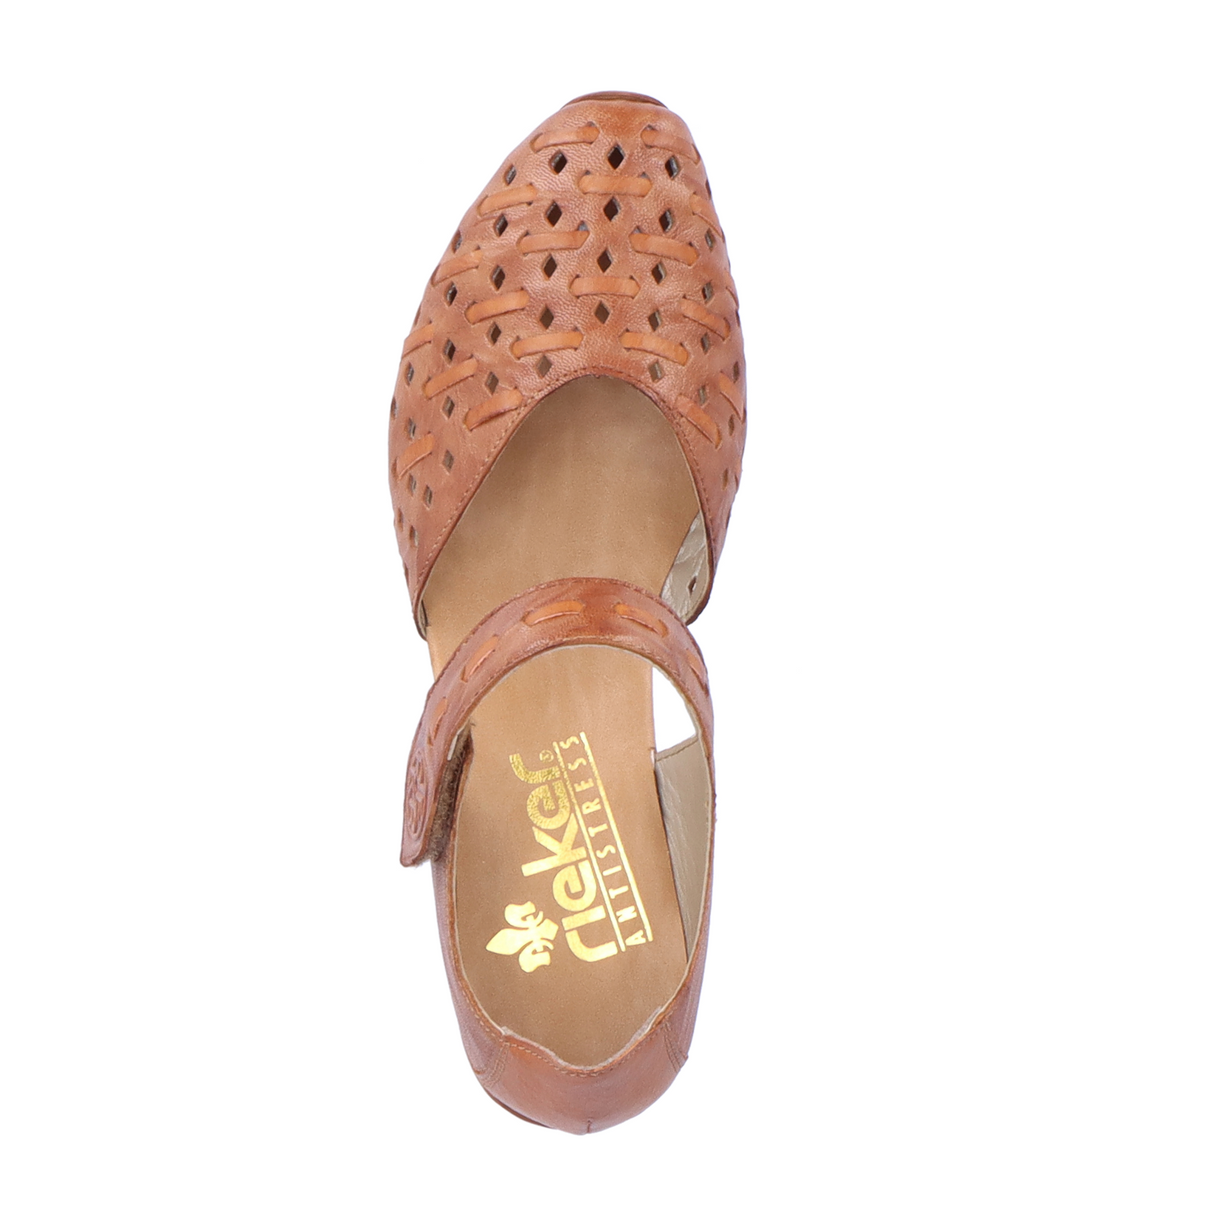 Rieker Mirjam 43770-22 Heeled Sandal (Women) - Cayenne Dress-Casual - Heels - The Heel Shoe Fitters